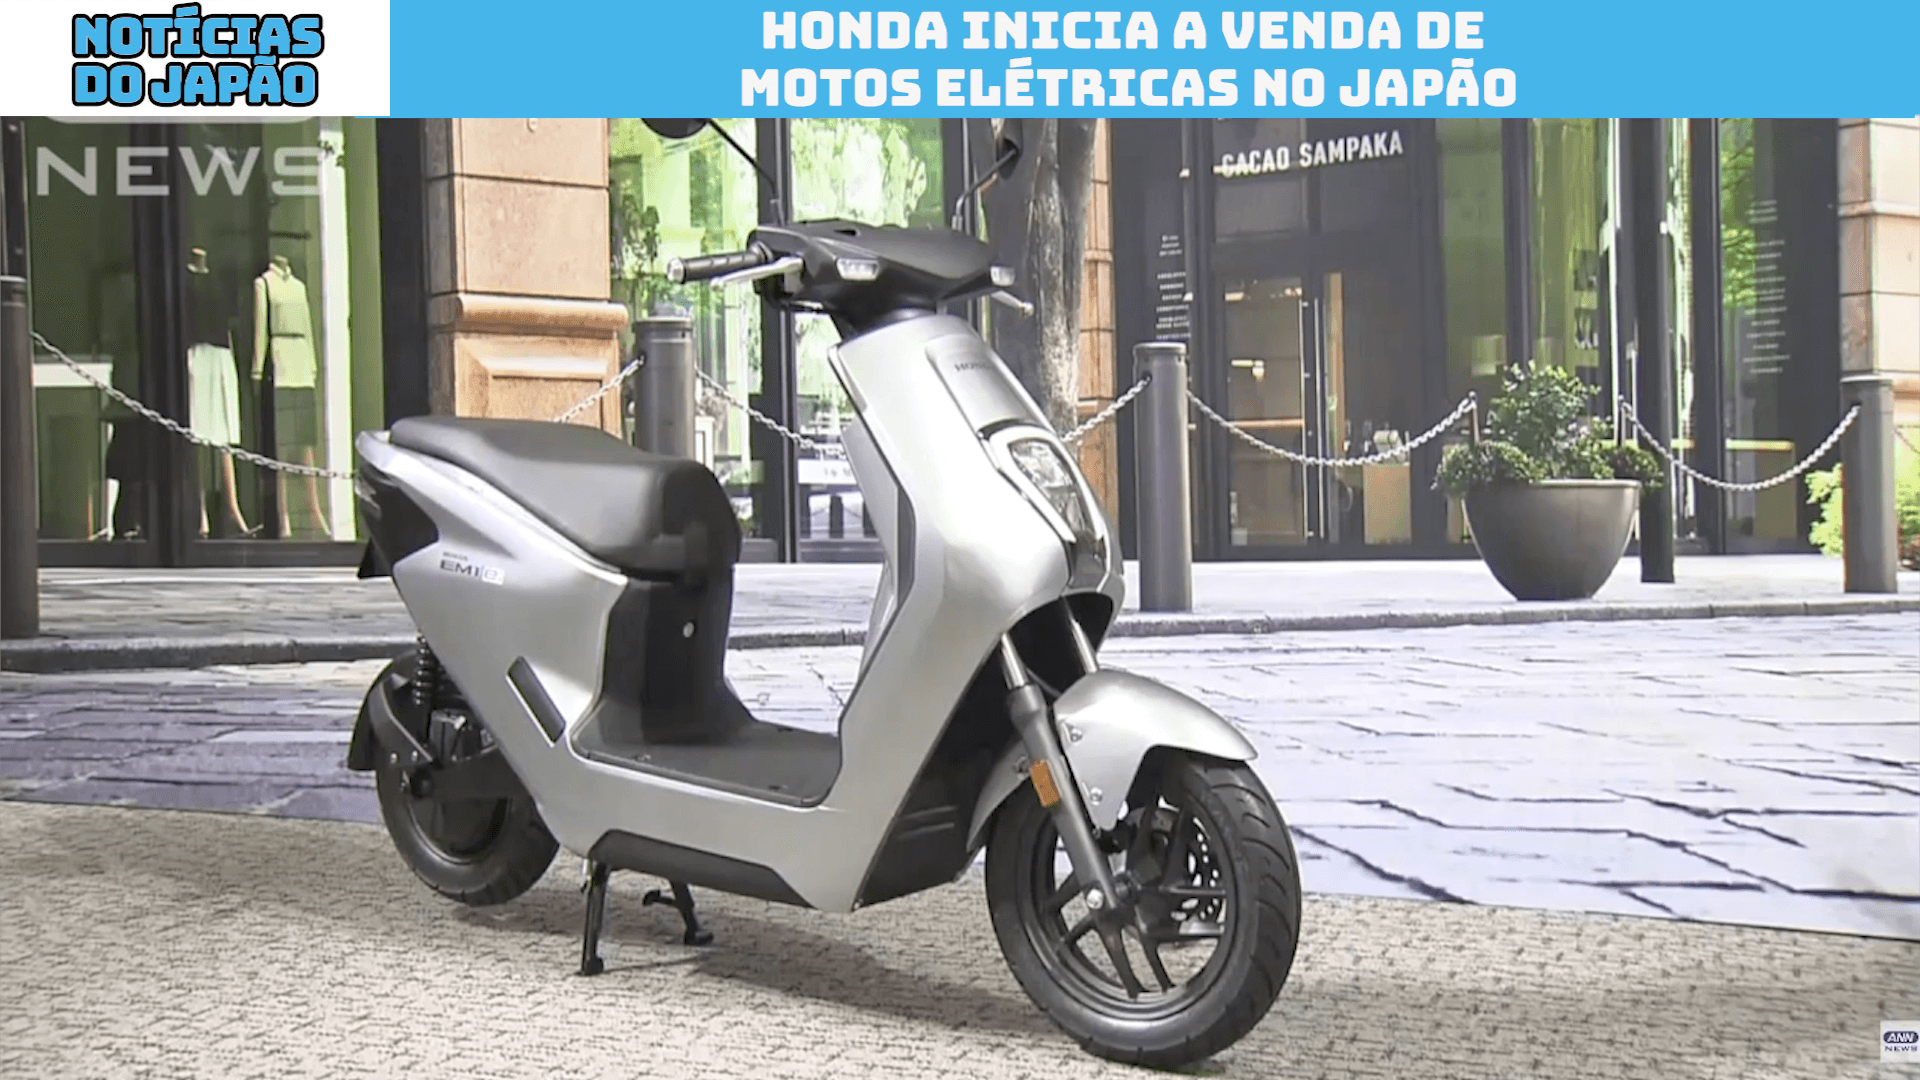 Honda inicia a venda de motos elétricas no Japão